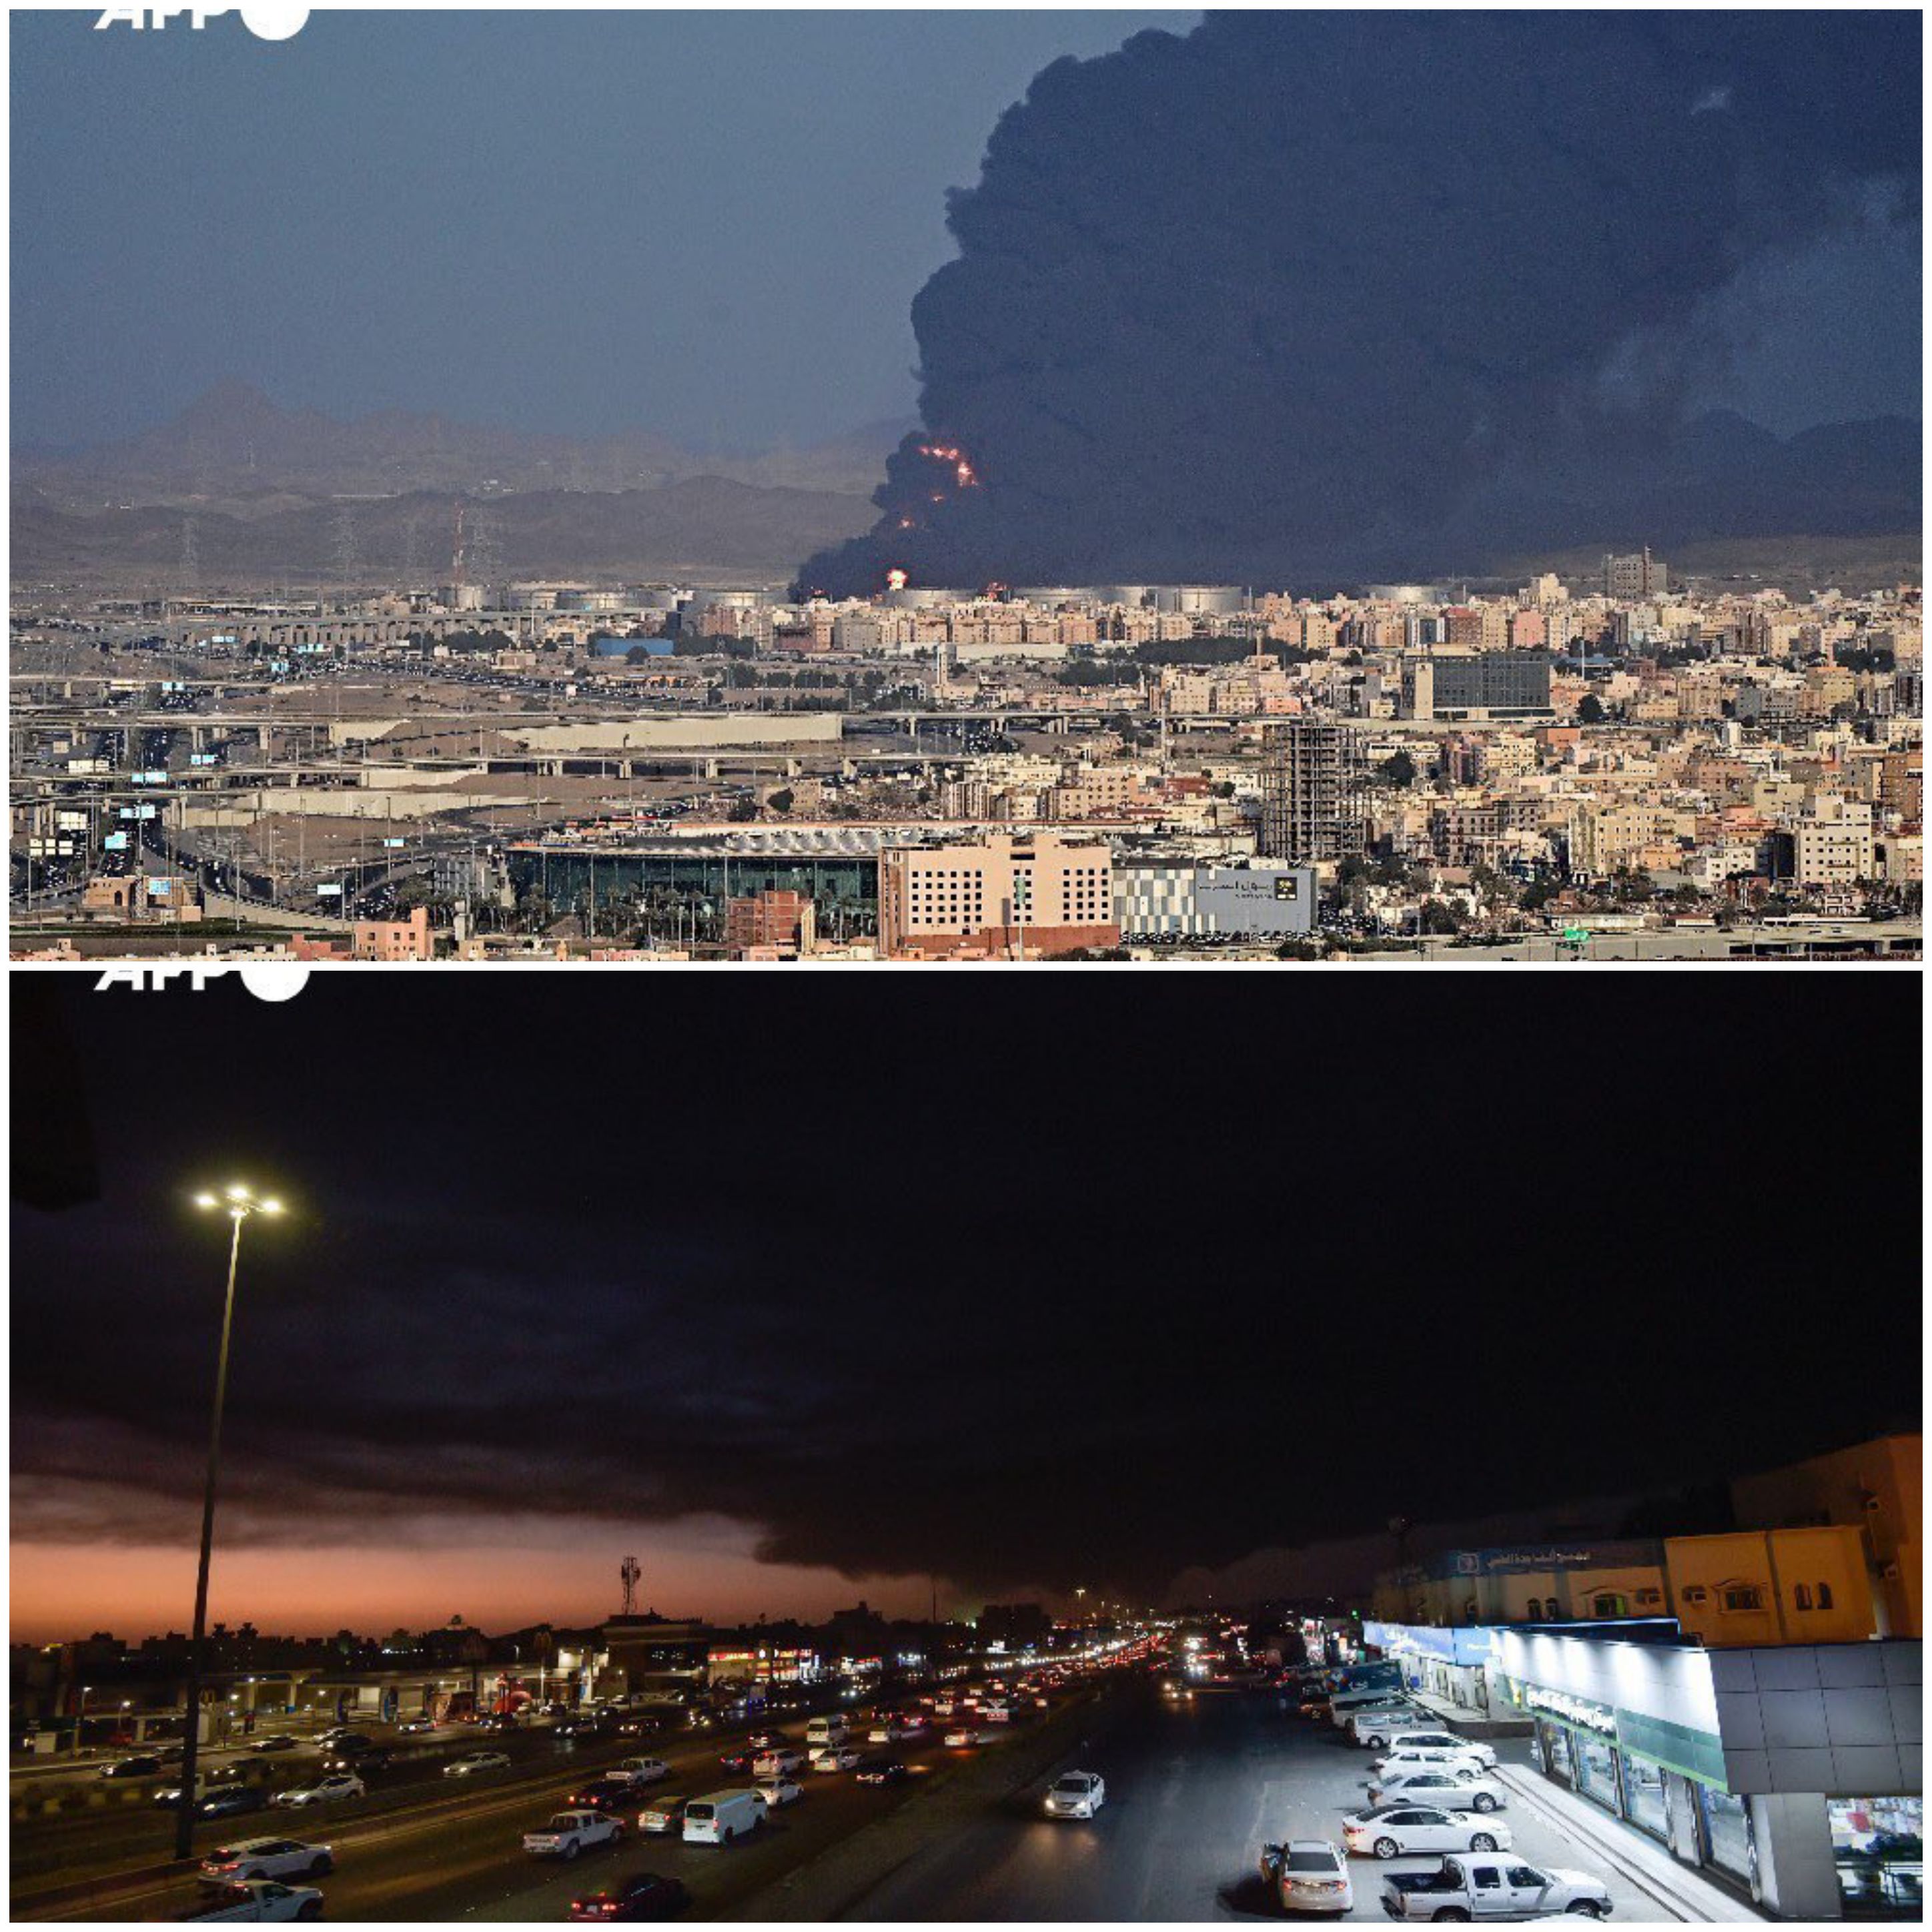 شاهد هجمات حوثية مكثفة تستهدف السعودية والدخان الأسود يغطي سماء جدة جراء قصف أرامكو صور